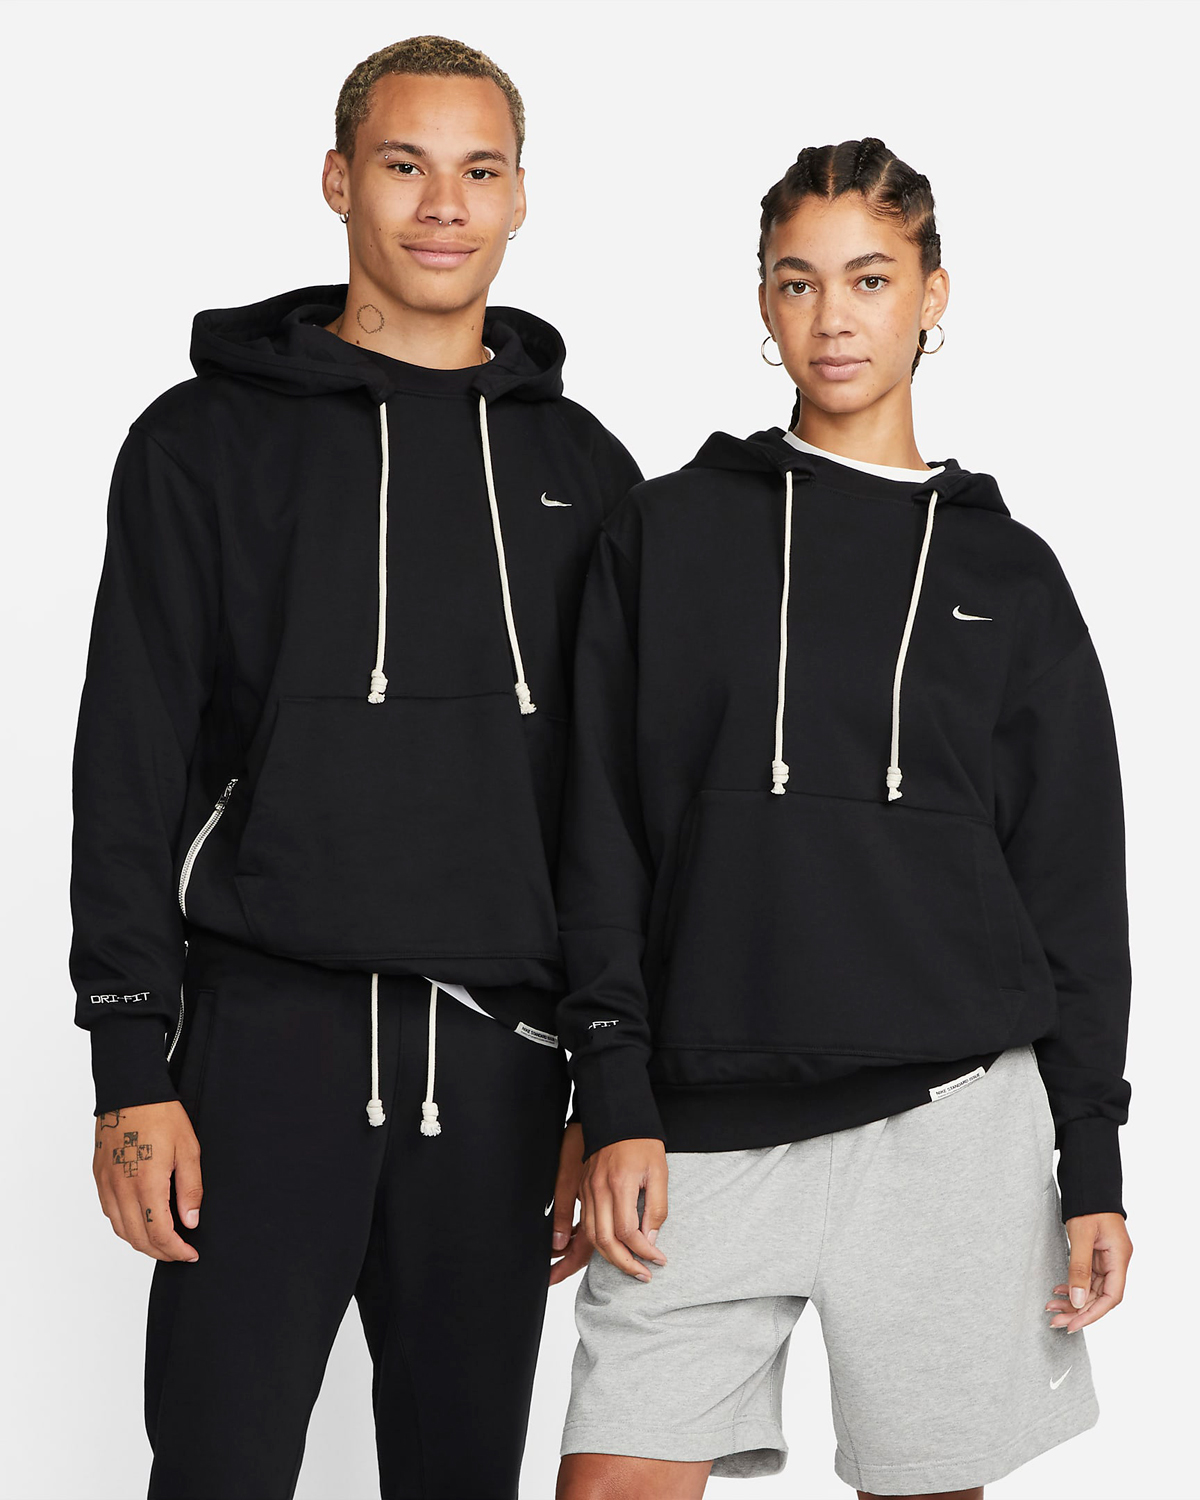 Nike-Standard-Issue-Hoodie-Black